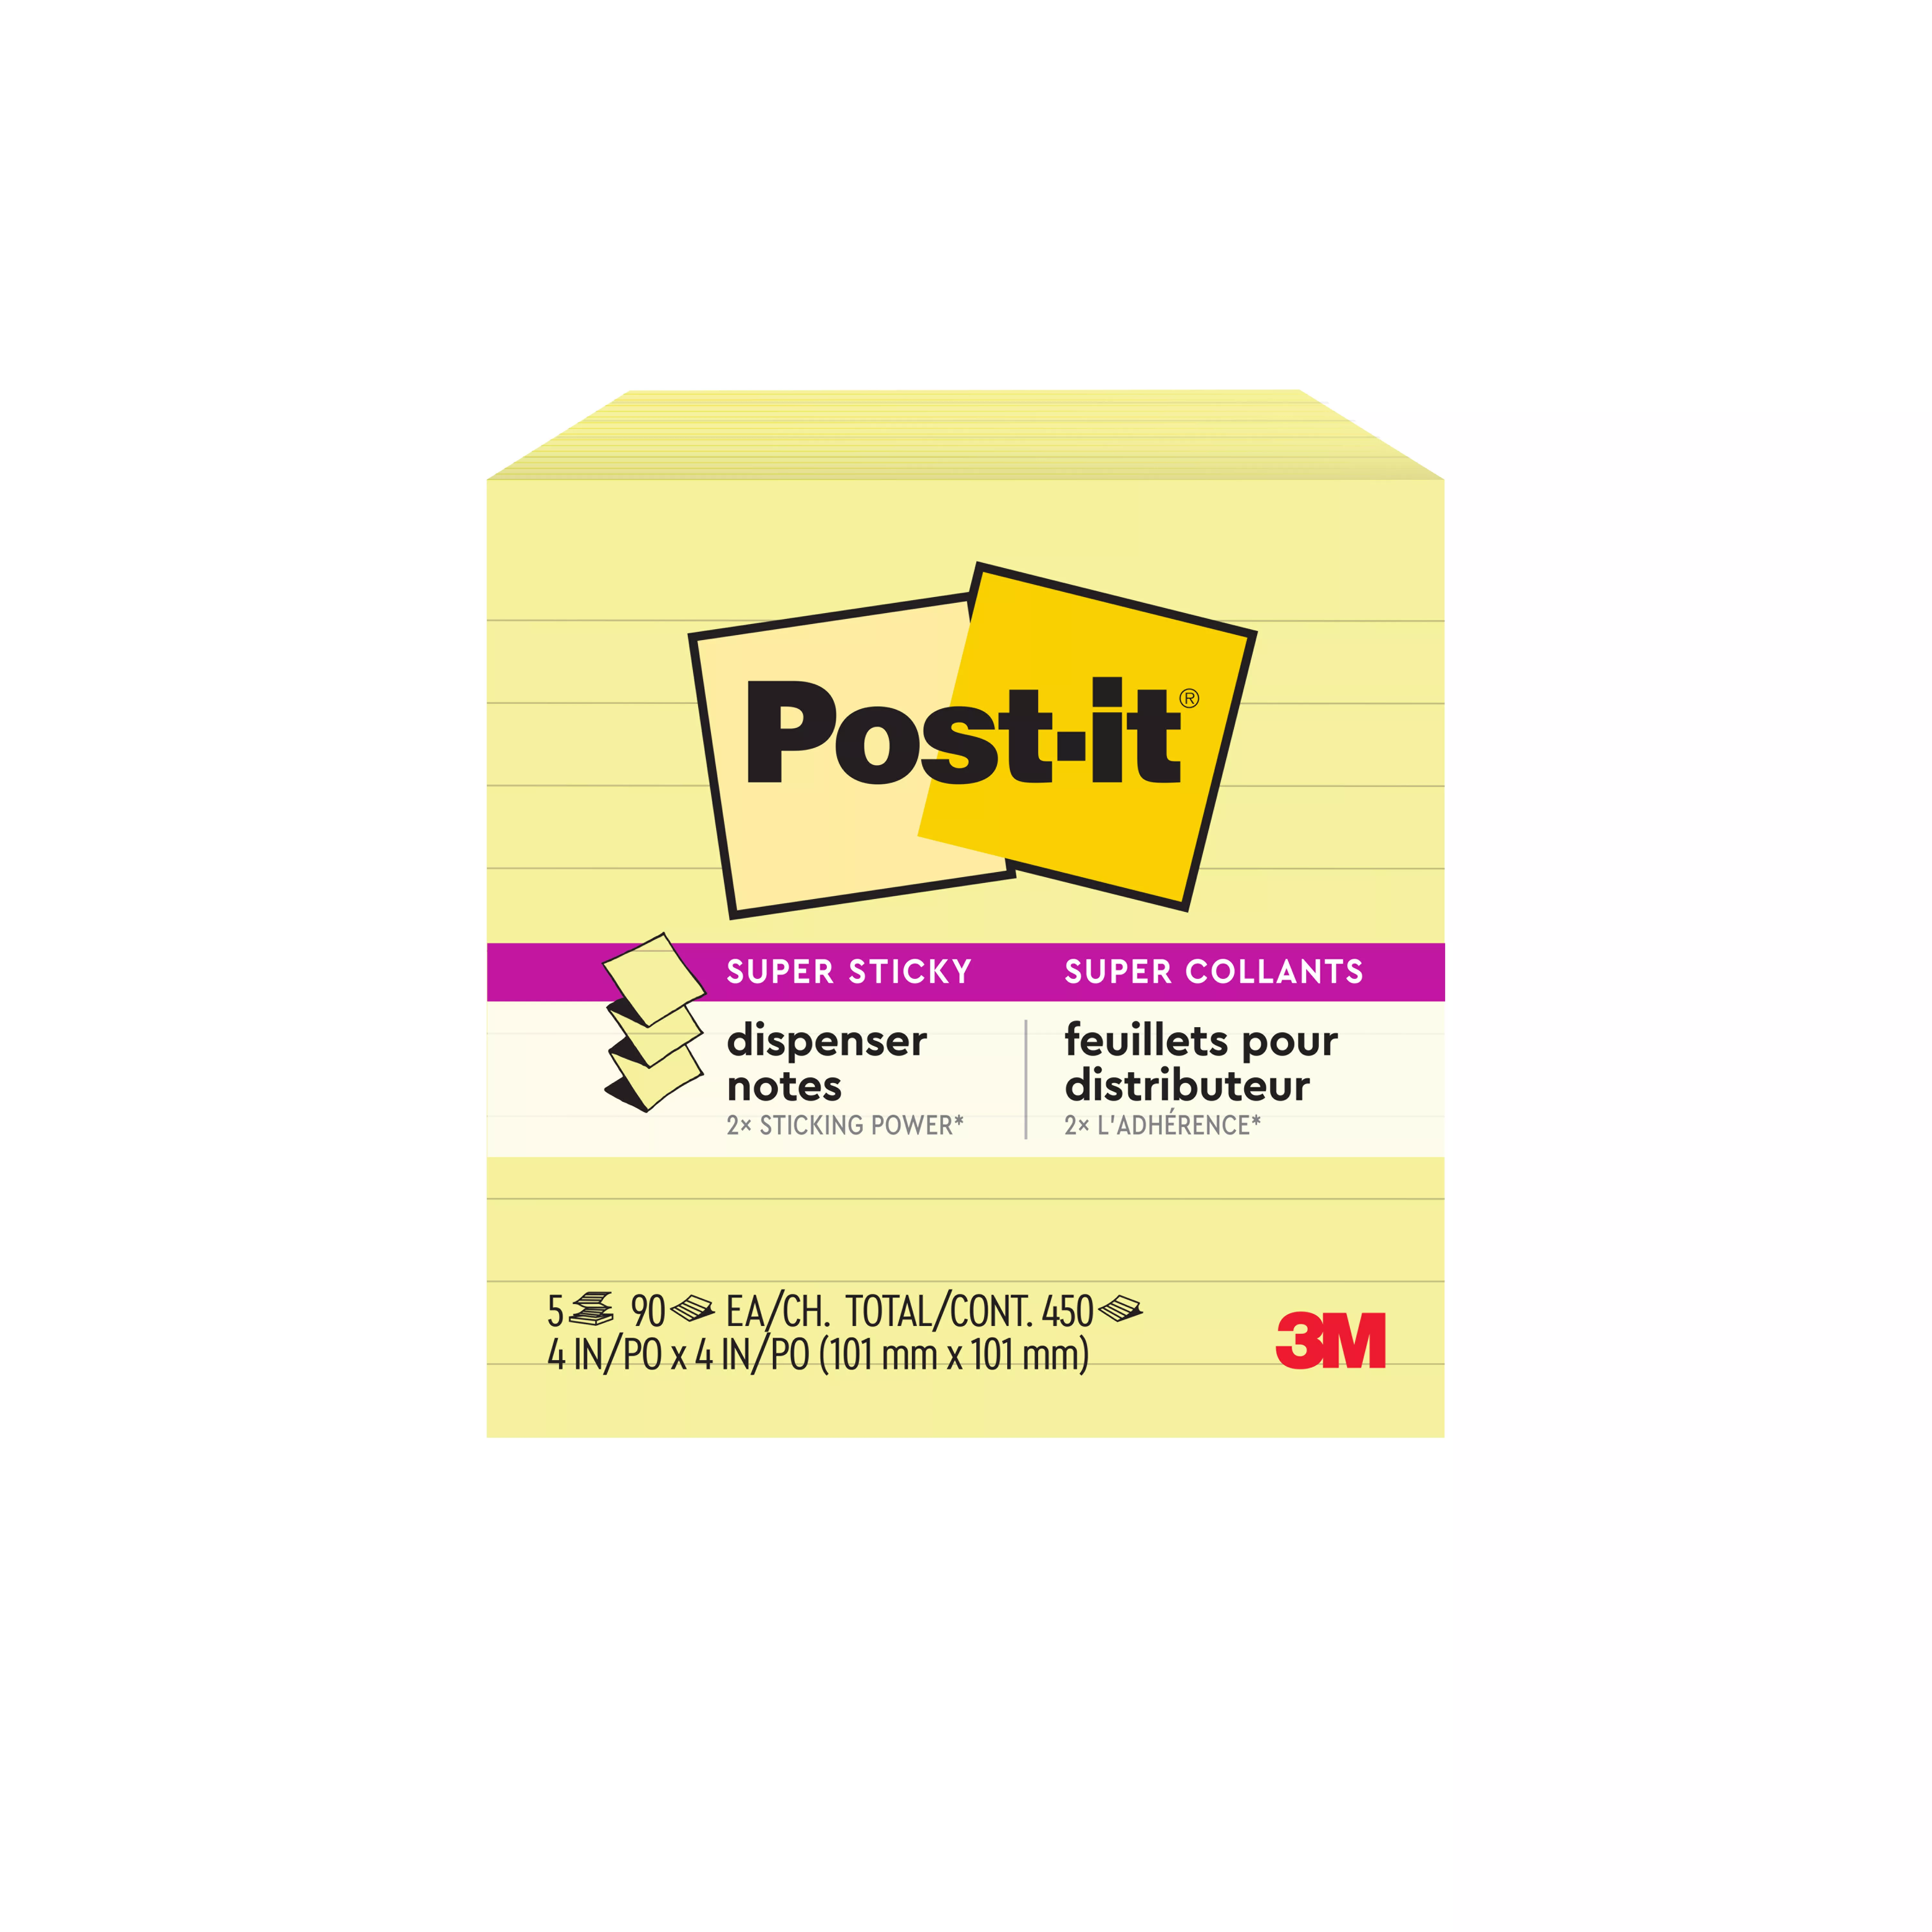 SKU 7000052632 | Post-it® Super Sticky Dispenser Pop-up Notes R330-12SSCY